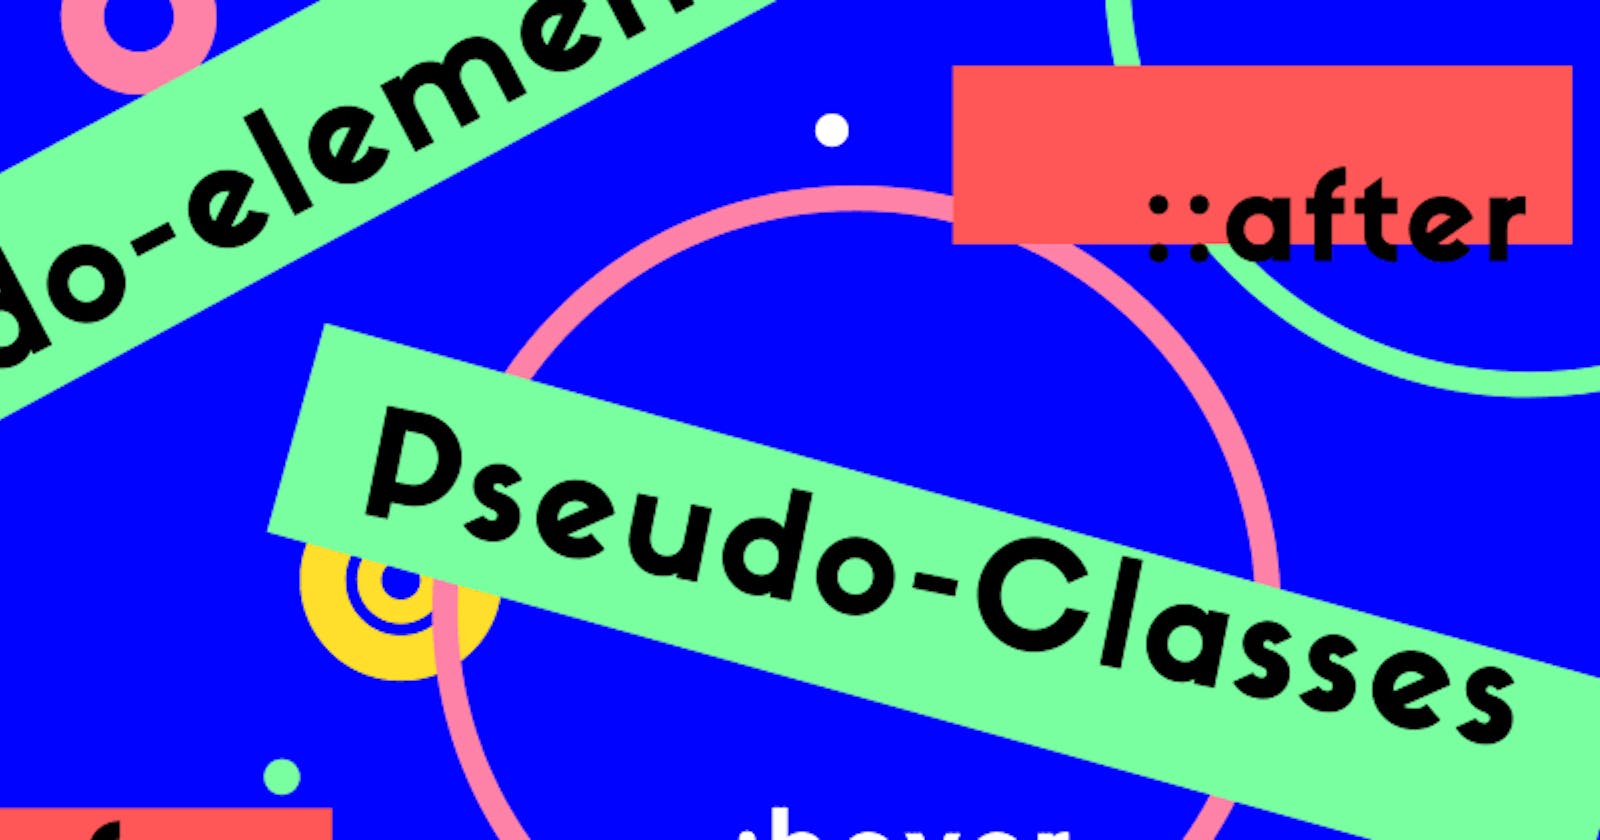 Pseudo-classes and pseudo-elements